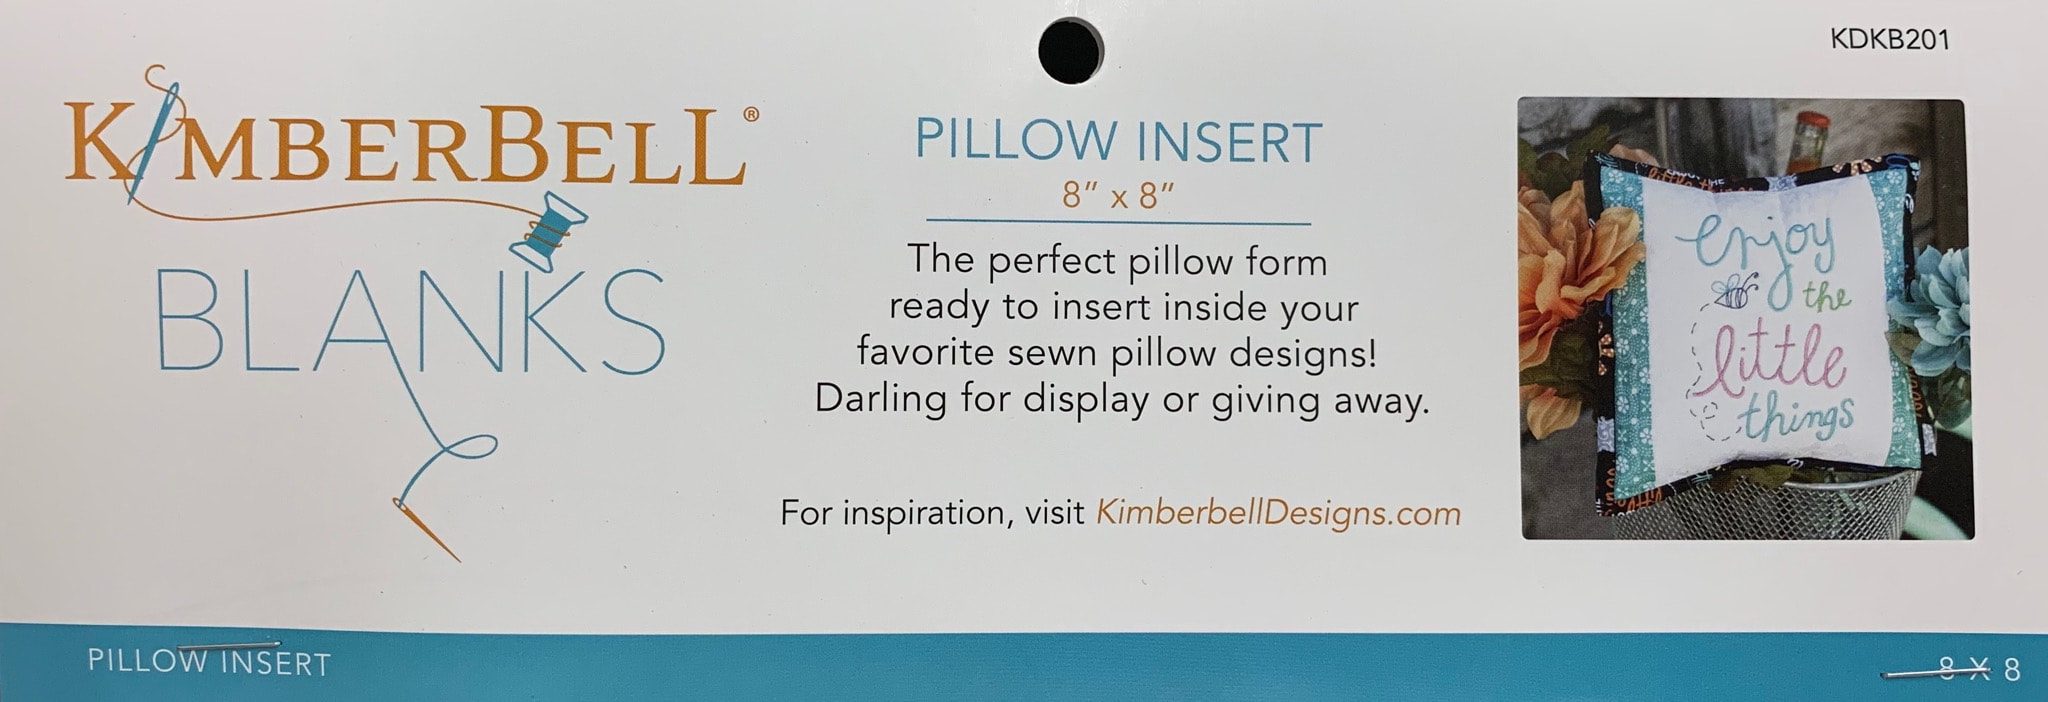 Kimberbell Pillow Insert - 8"x8"